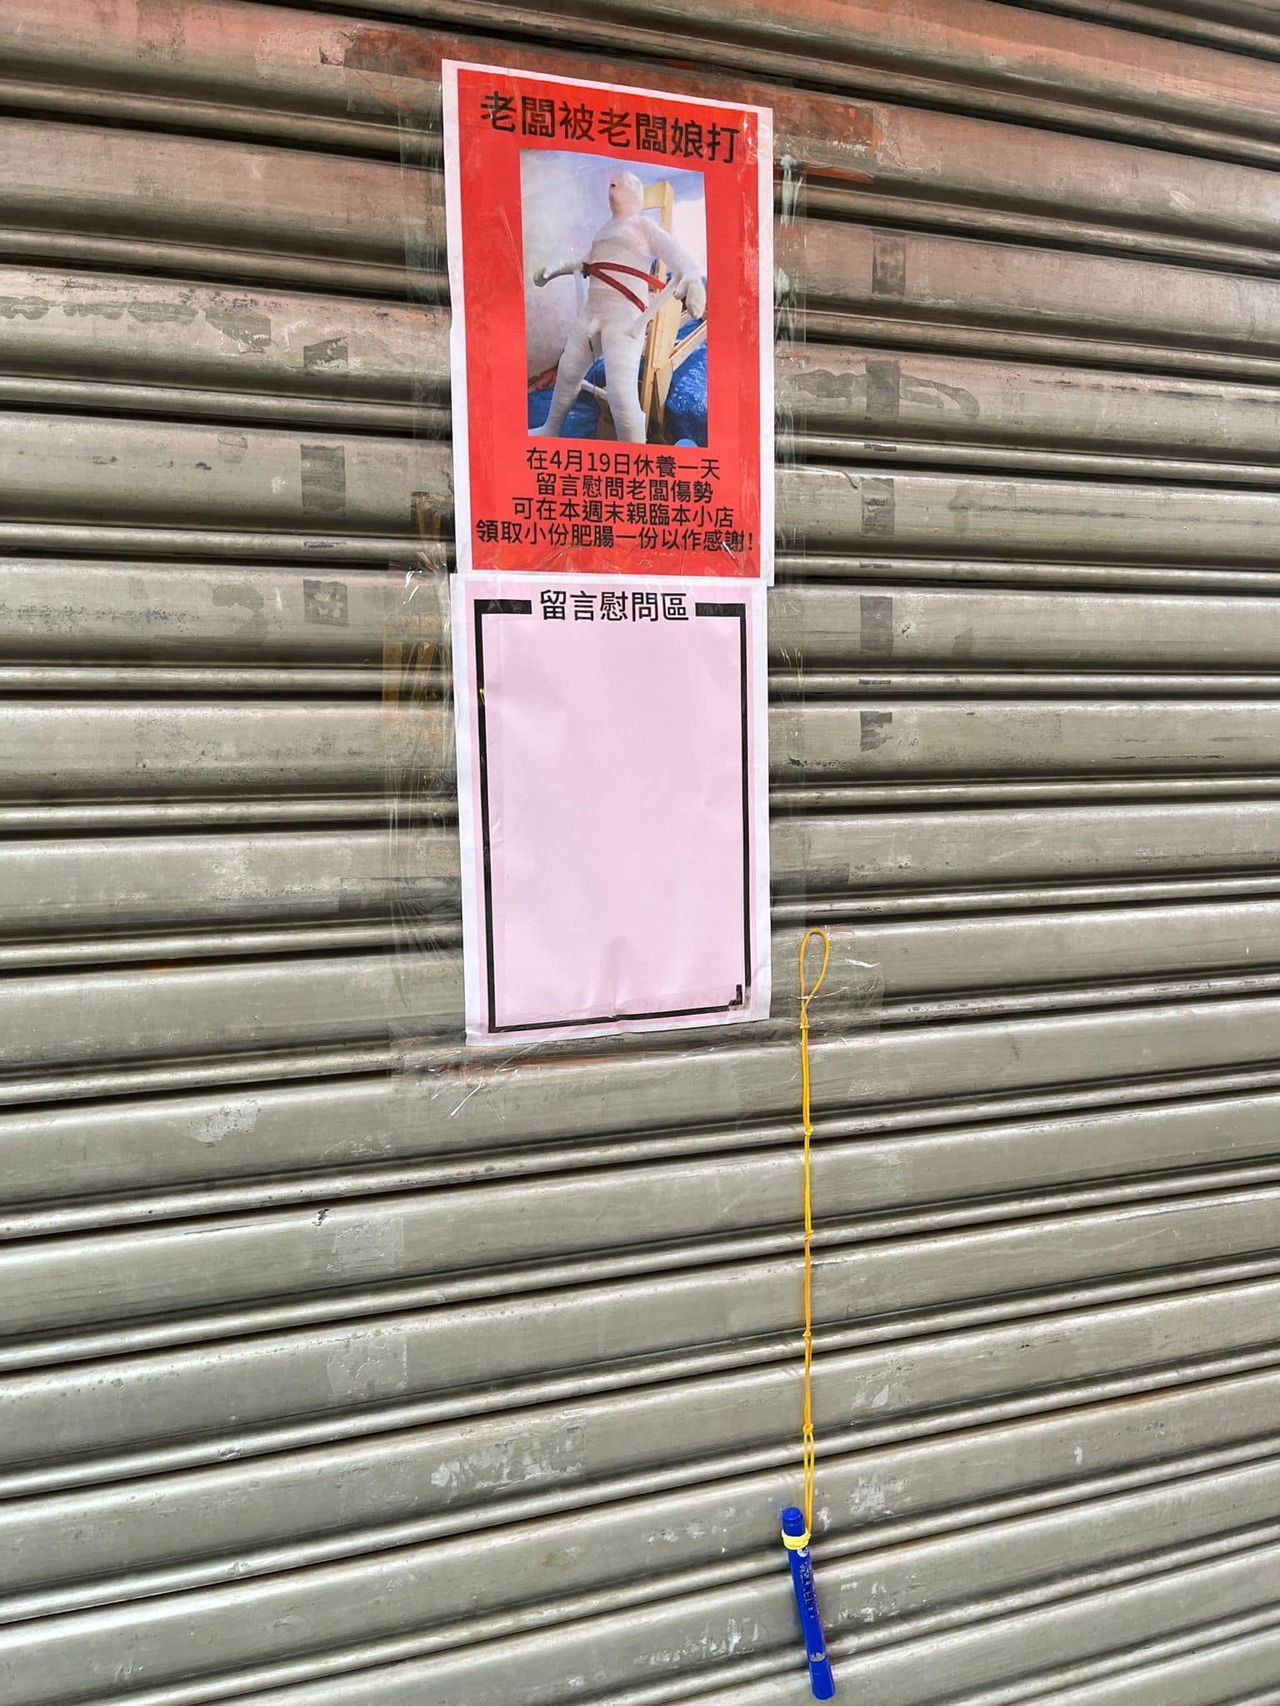 香港某小吃店在铁门外张贴告示，写著「老板被老板娘打」，甚至贴出1张假人被五花大绑的网上图片，并在下方另设「留言慰问区」。图／撷自「D18-大埔友」